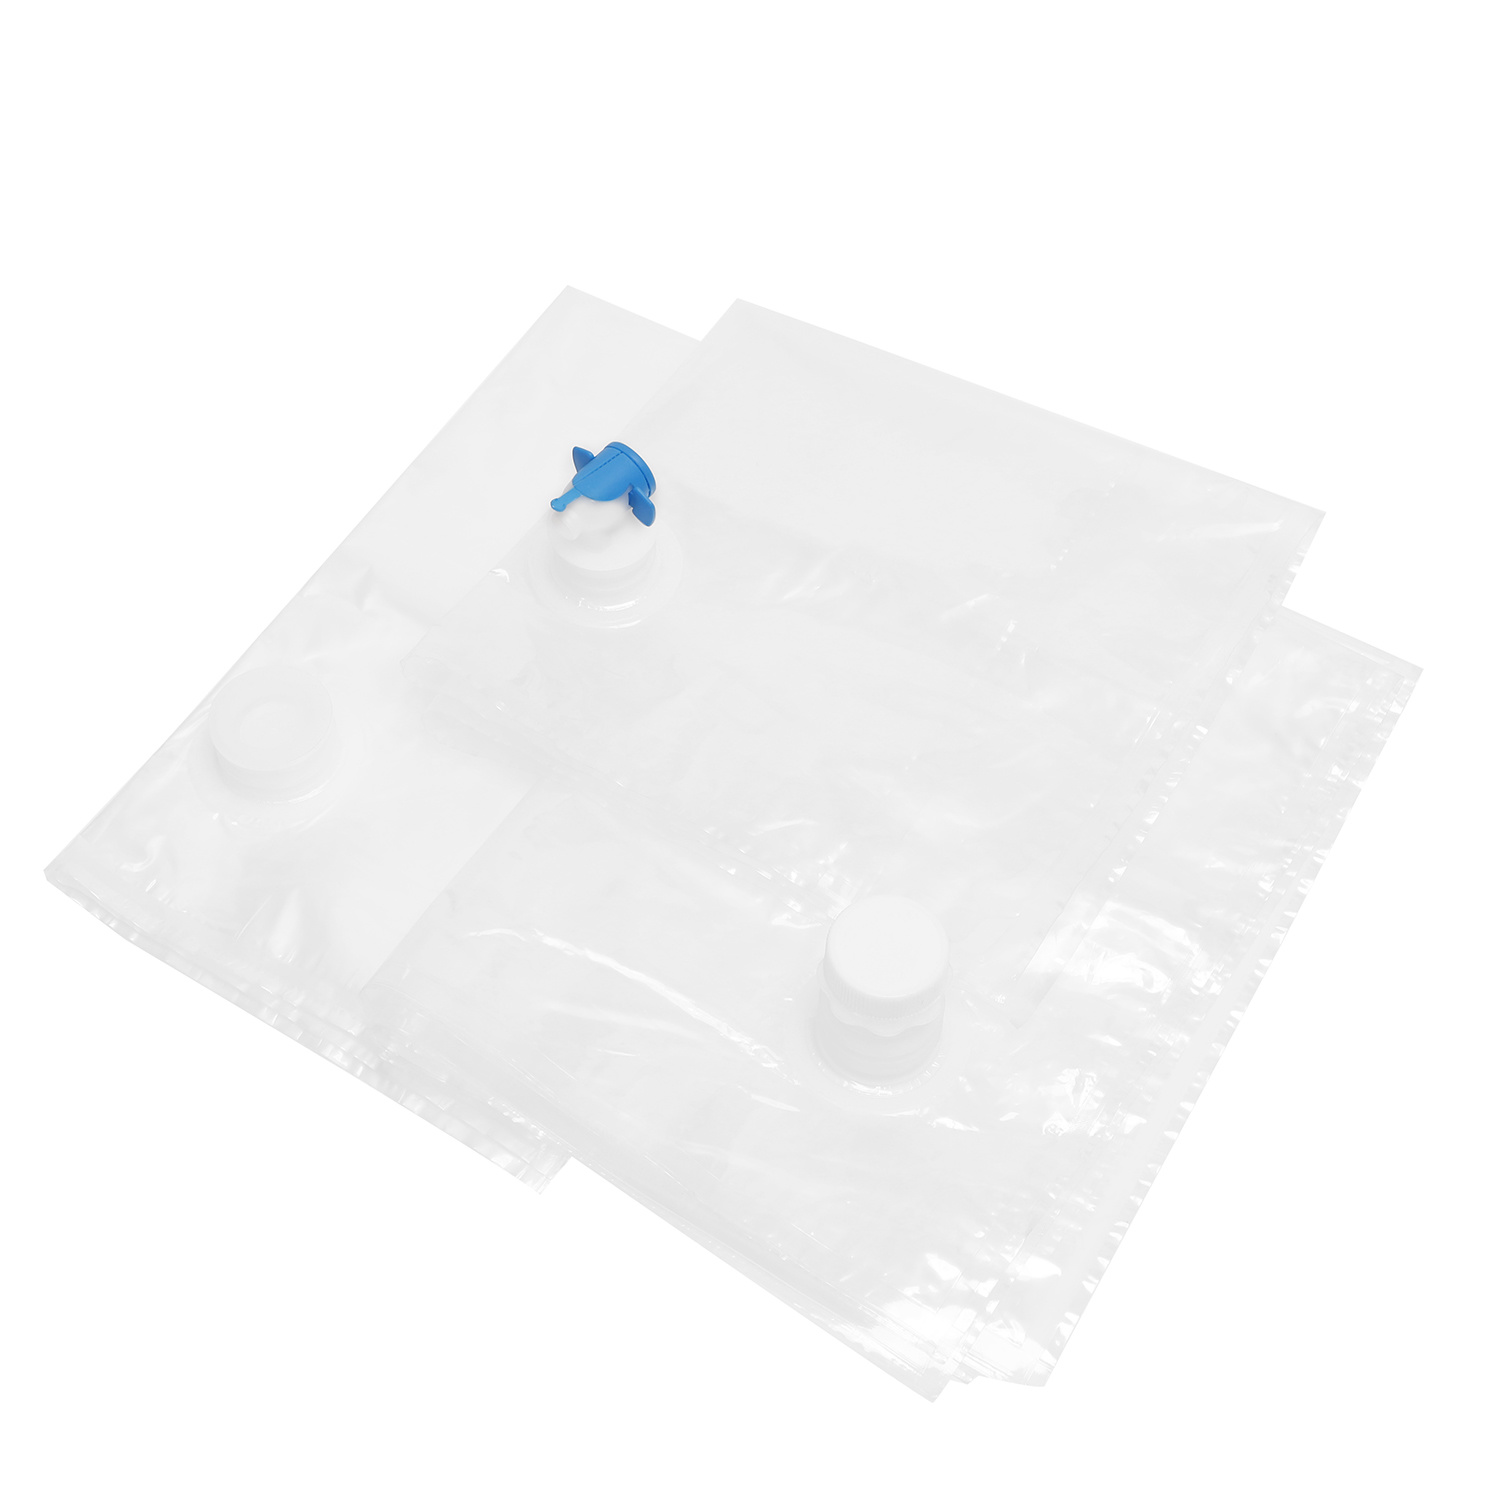 3L BIB Transparent Bag-In-Box Packaging for Water